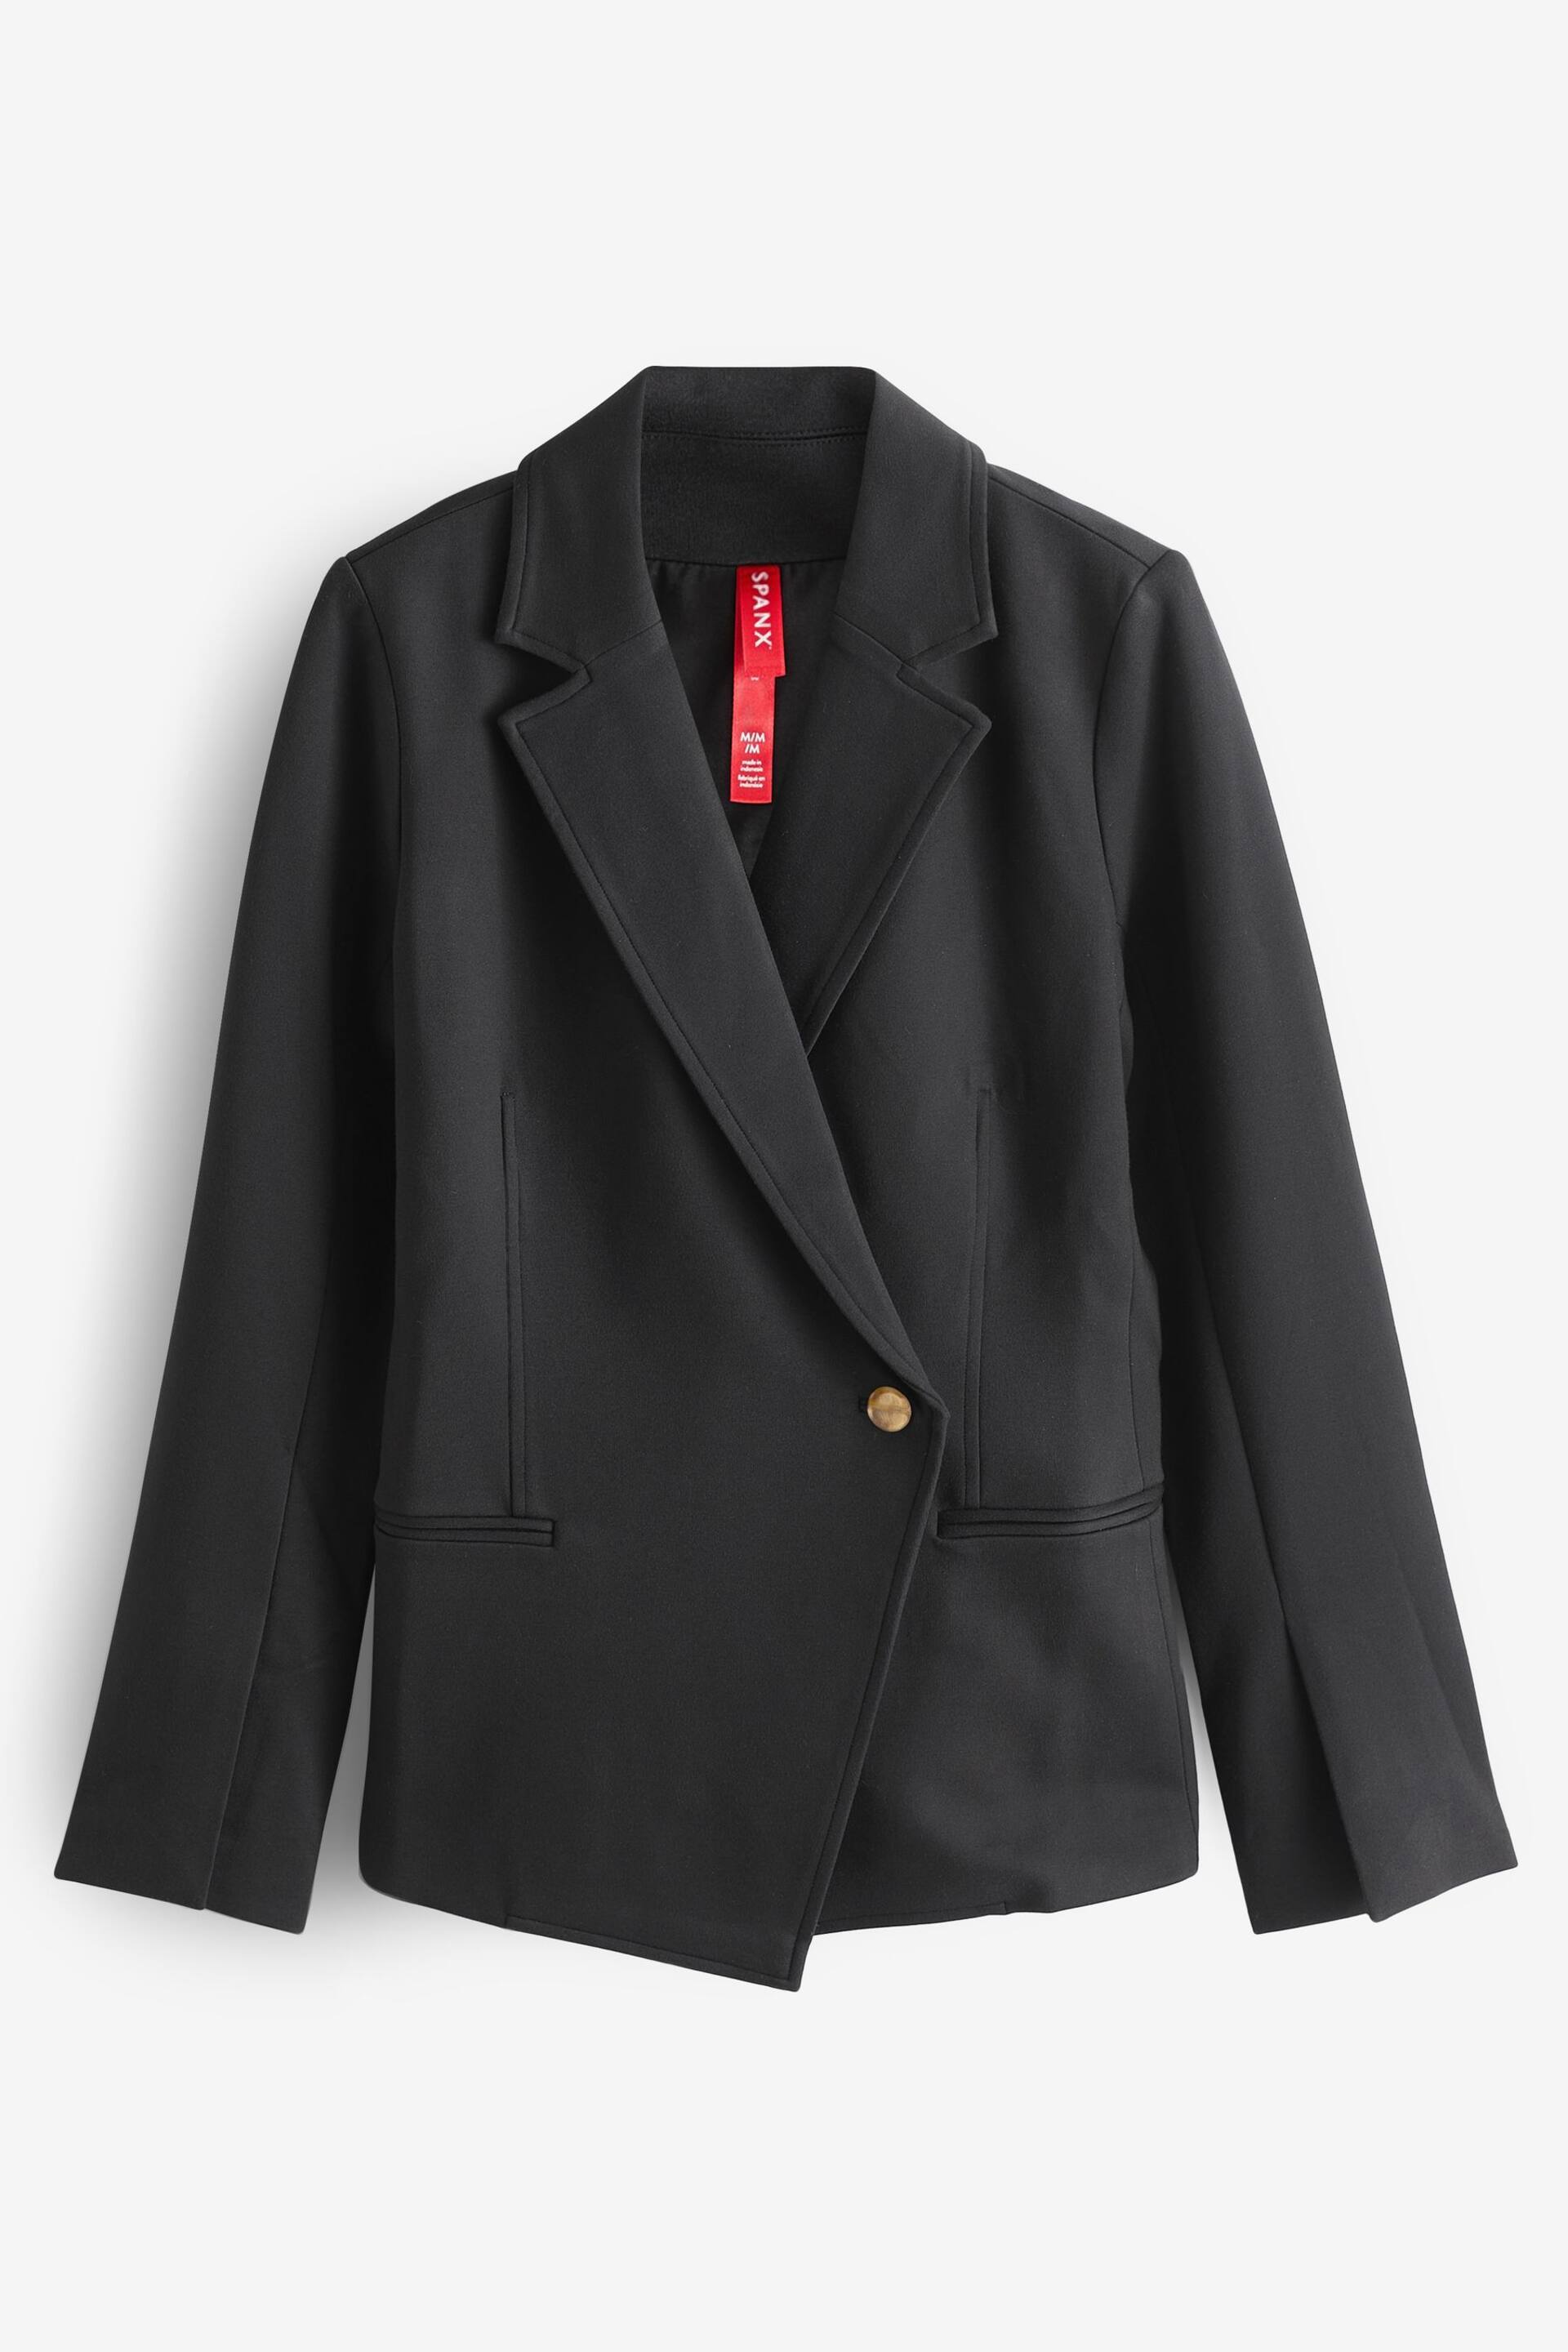 Spanx Ponte Asymmetric Tailored Black Blazer - Image 6 of 6